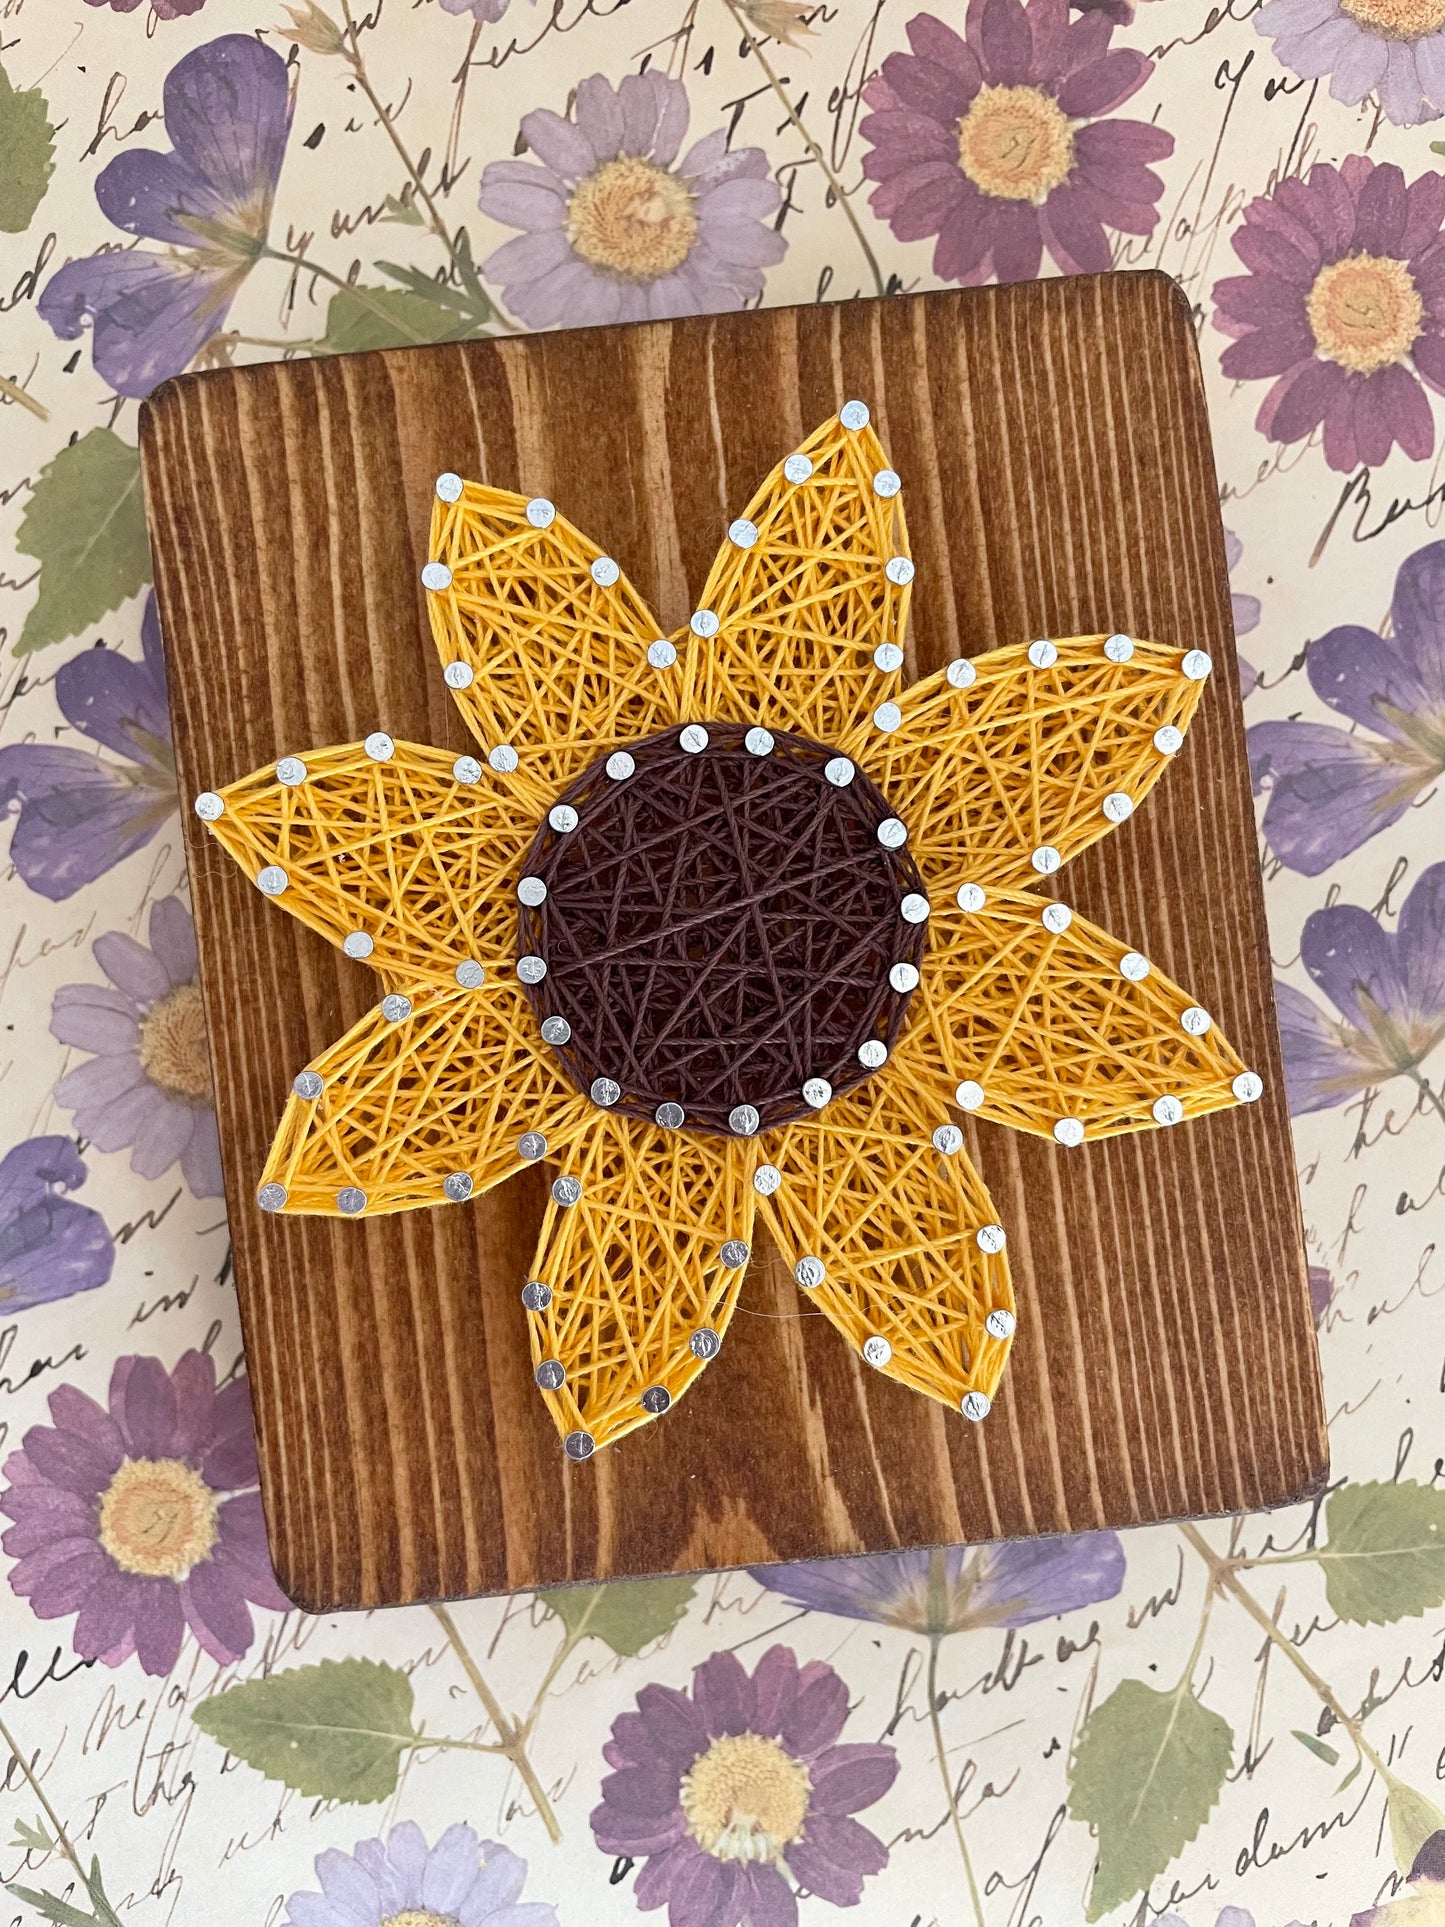 Sunflower String Art KIT, DIY Art Project, Make Your Own Art 